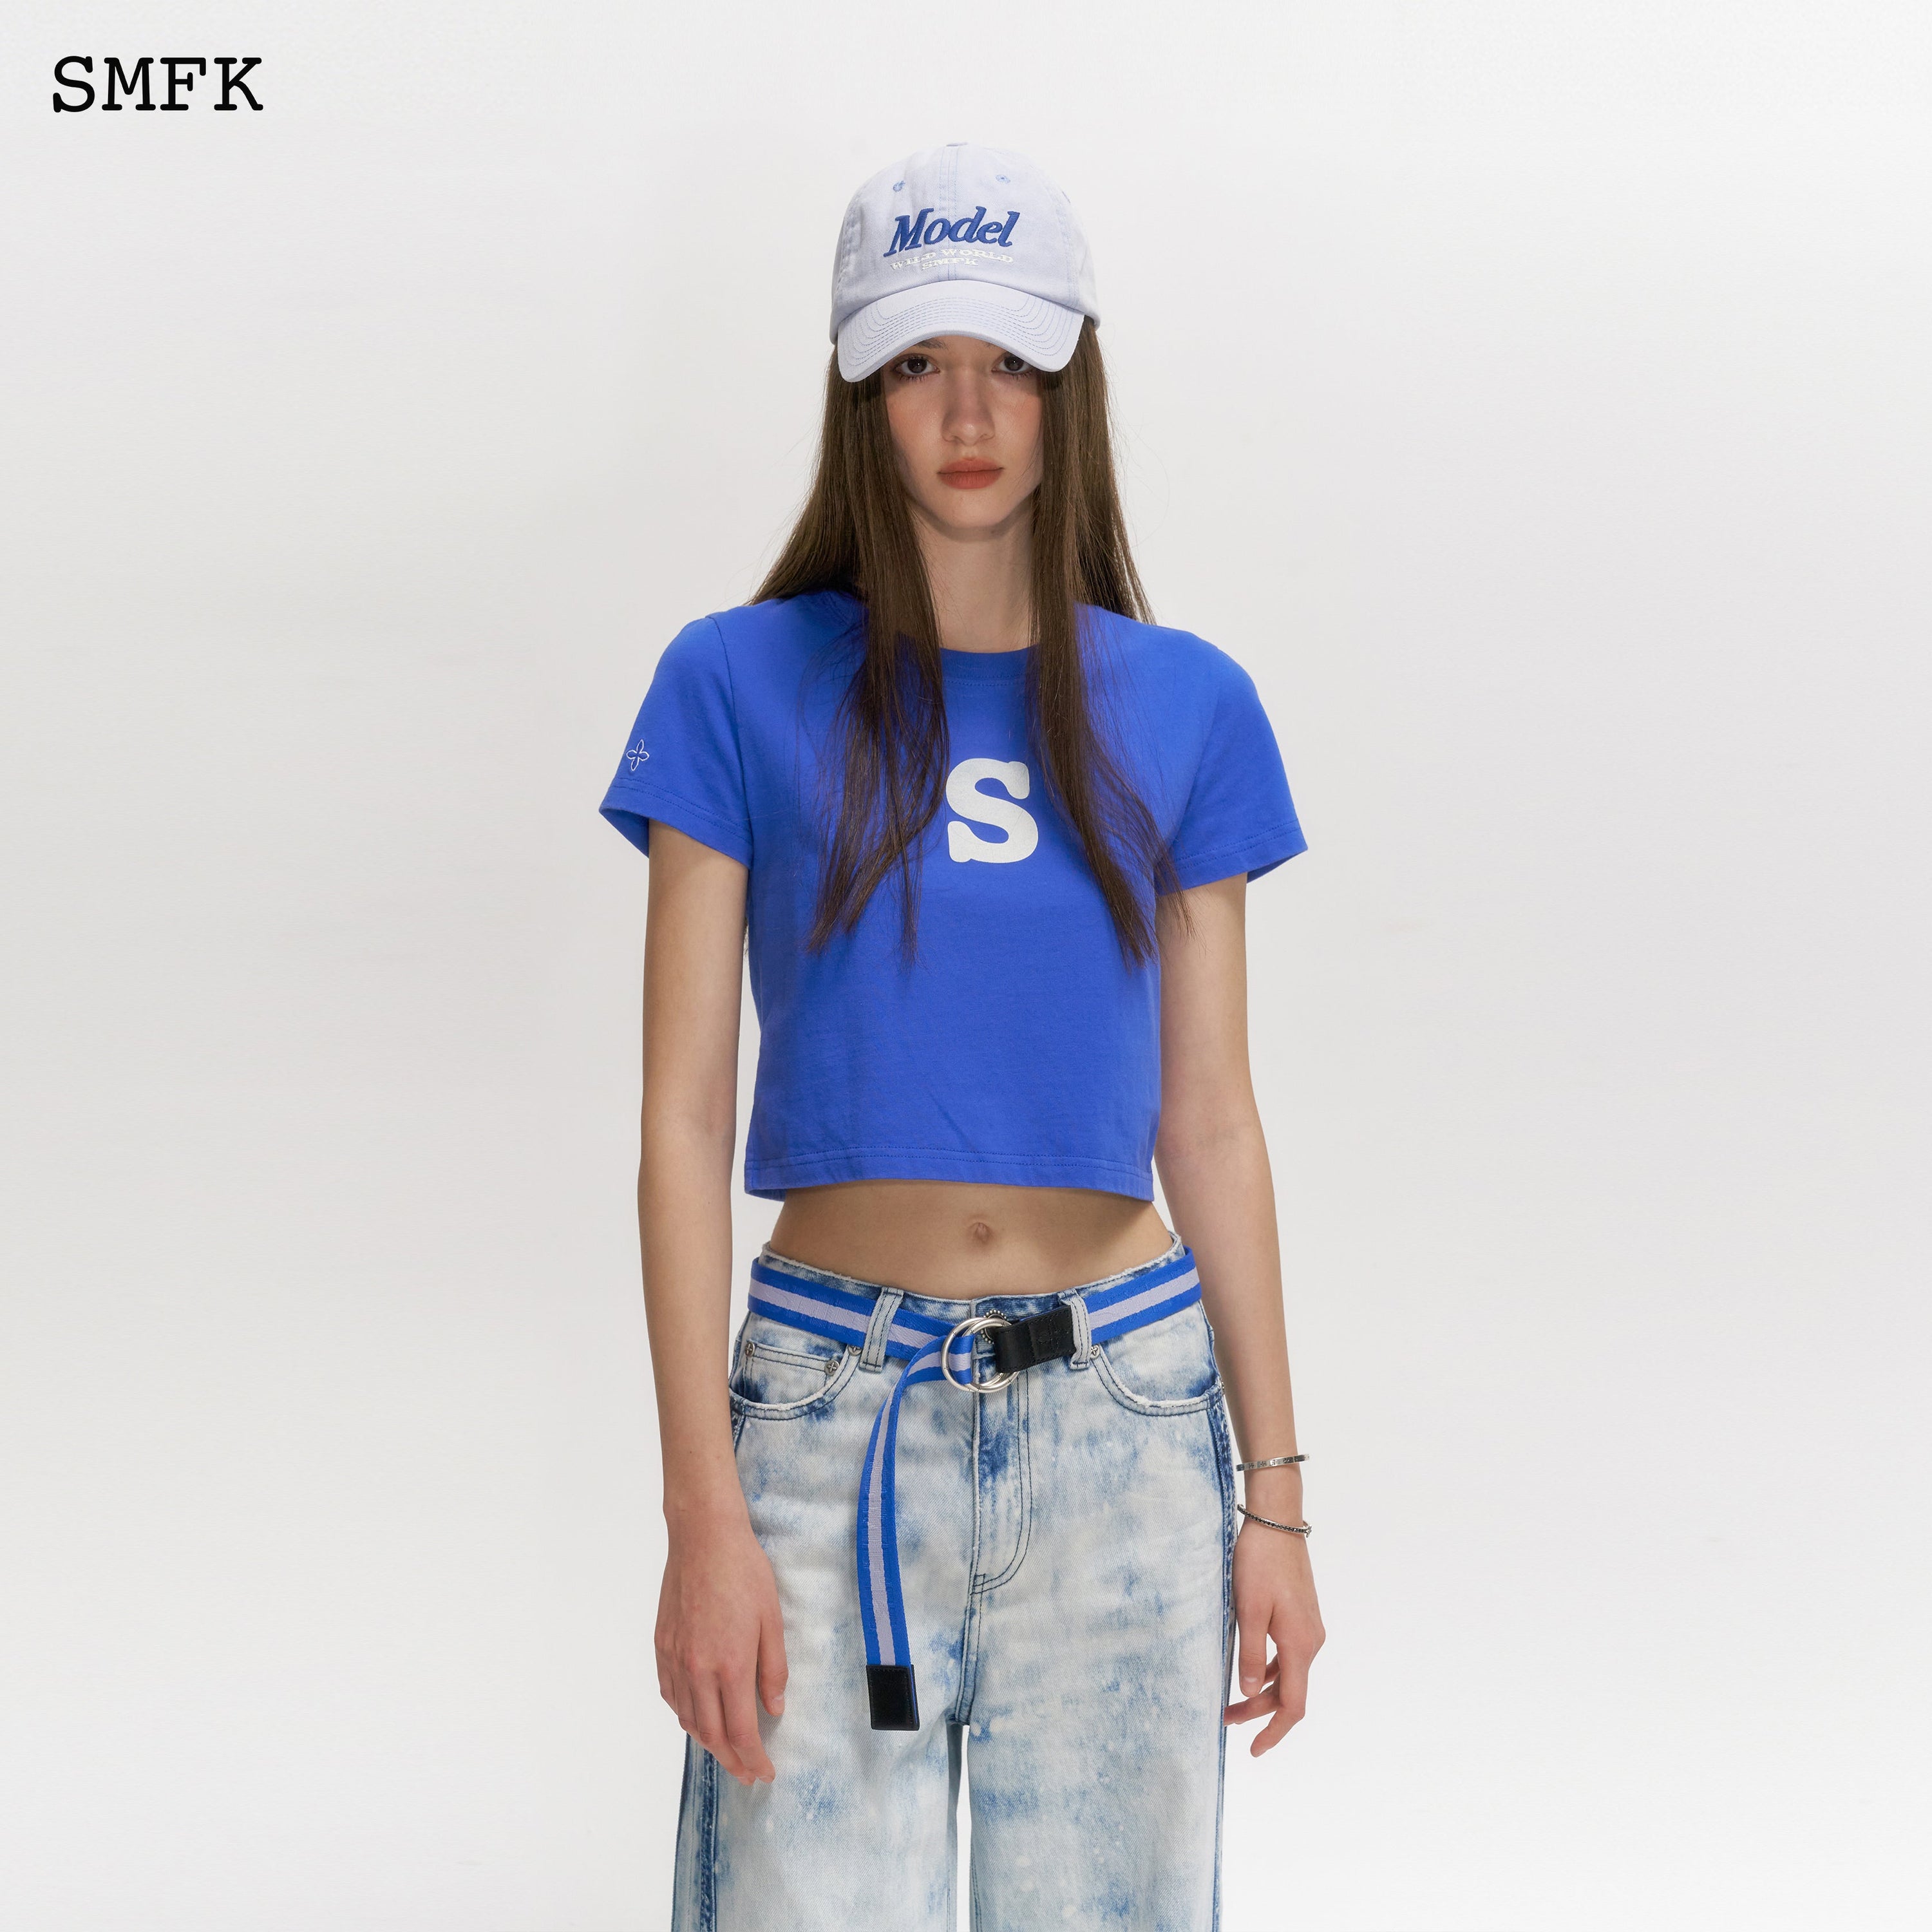 Skinny Model Dark Blue Tight T-shirt - SMFK Official